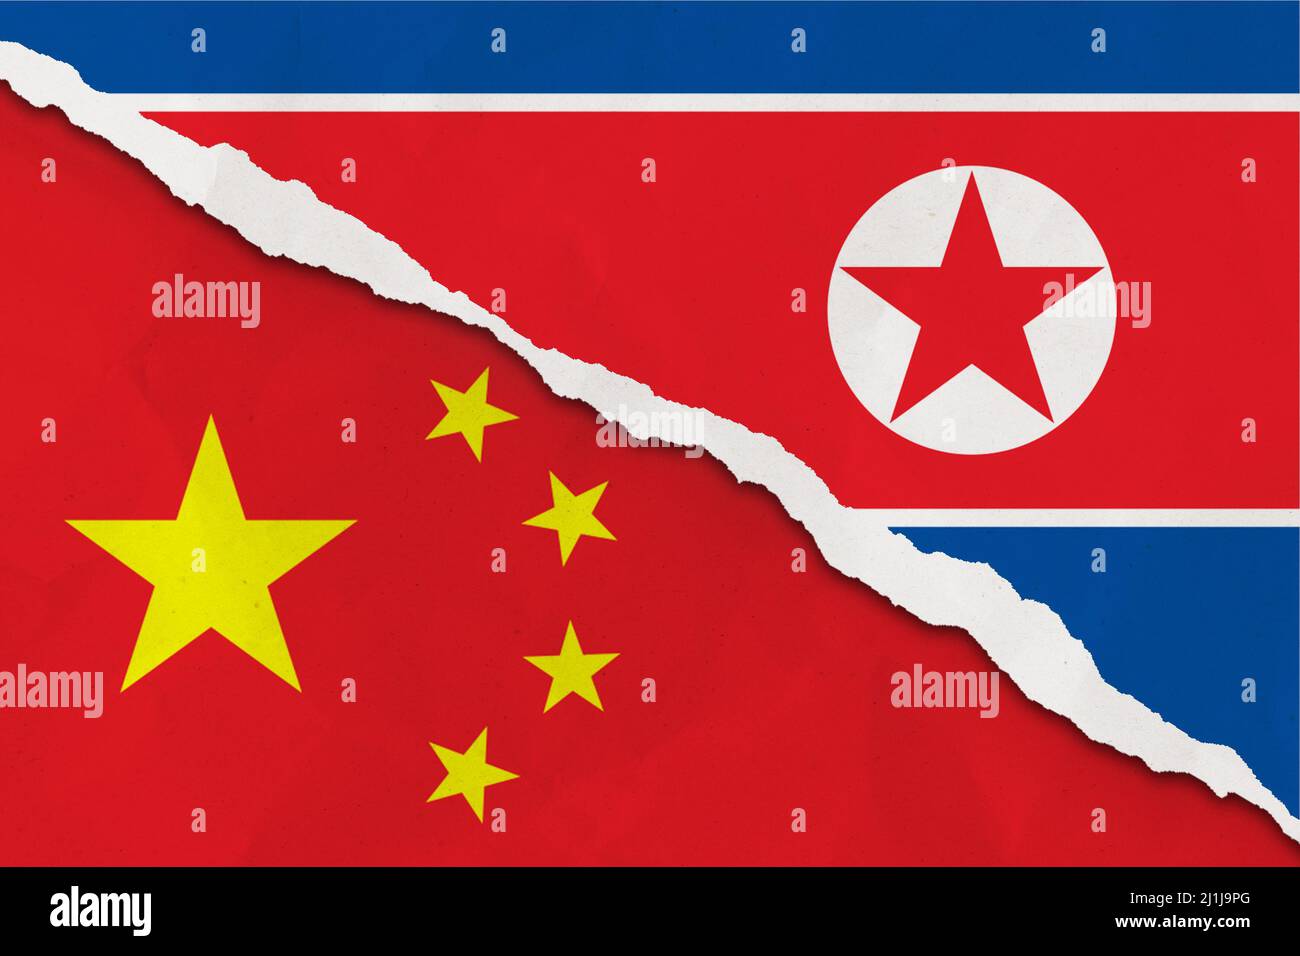 Le drapeau de la Chine et de la Corée du Nord a déchiré le papier grince fond. Résumé économie de la Chine et de la Corée du Nord, conflits politiques, concept de guerre texture backgroun Banque D'Images